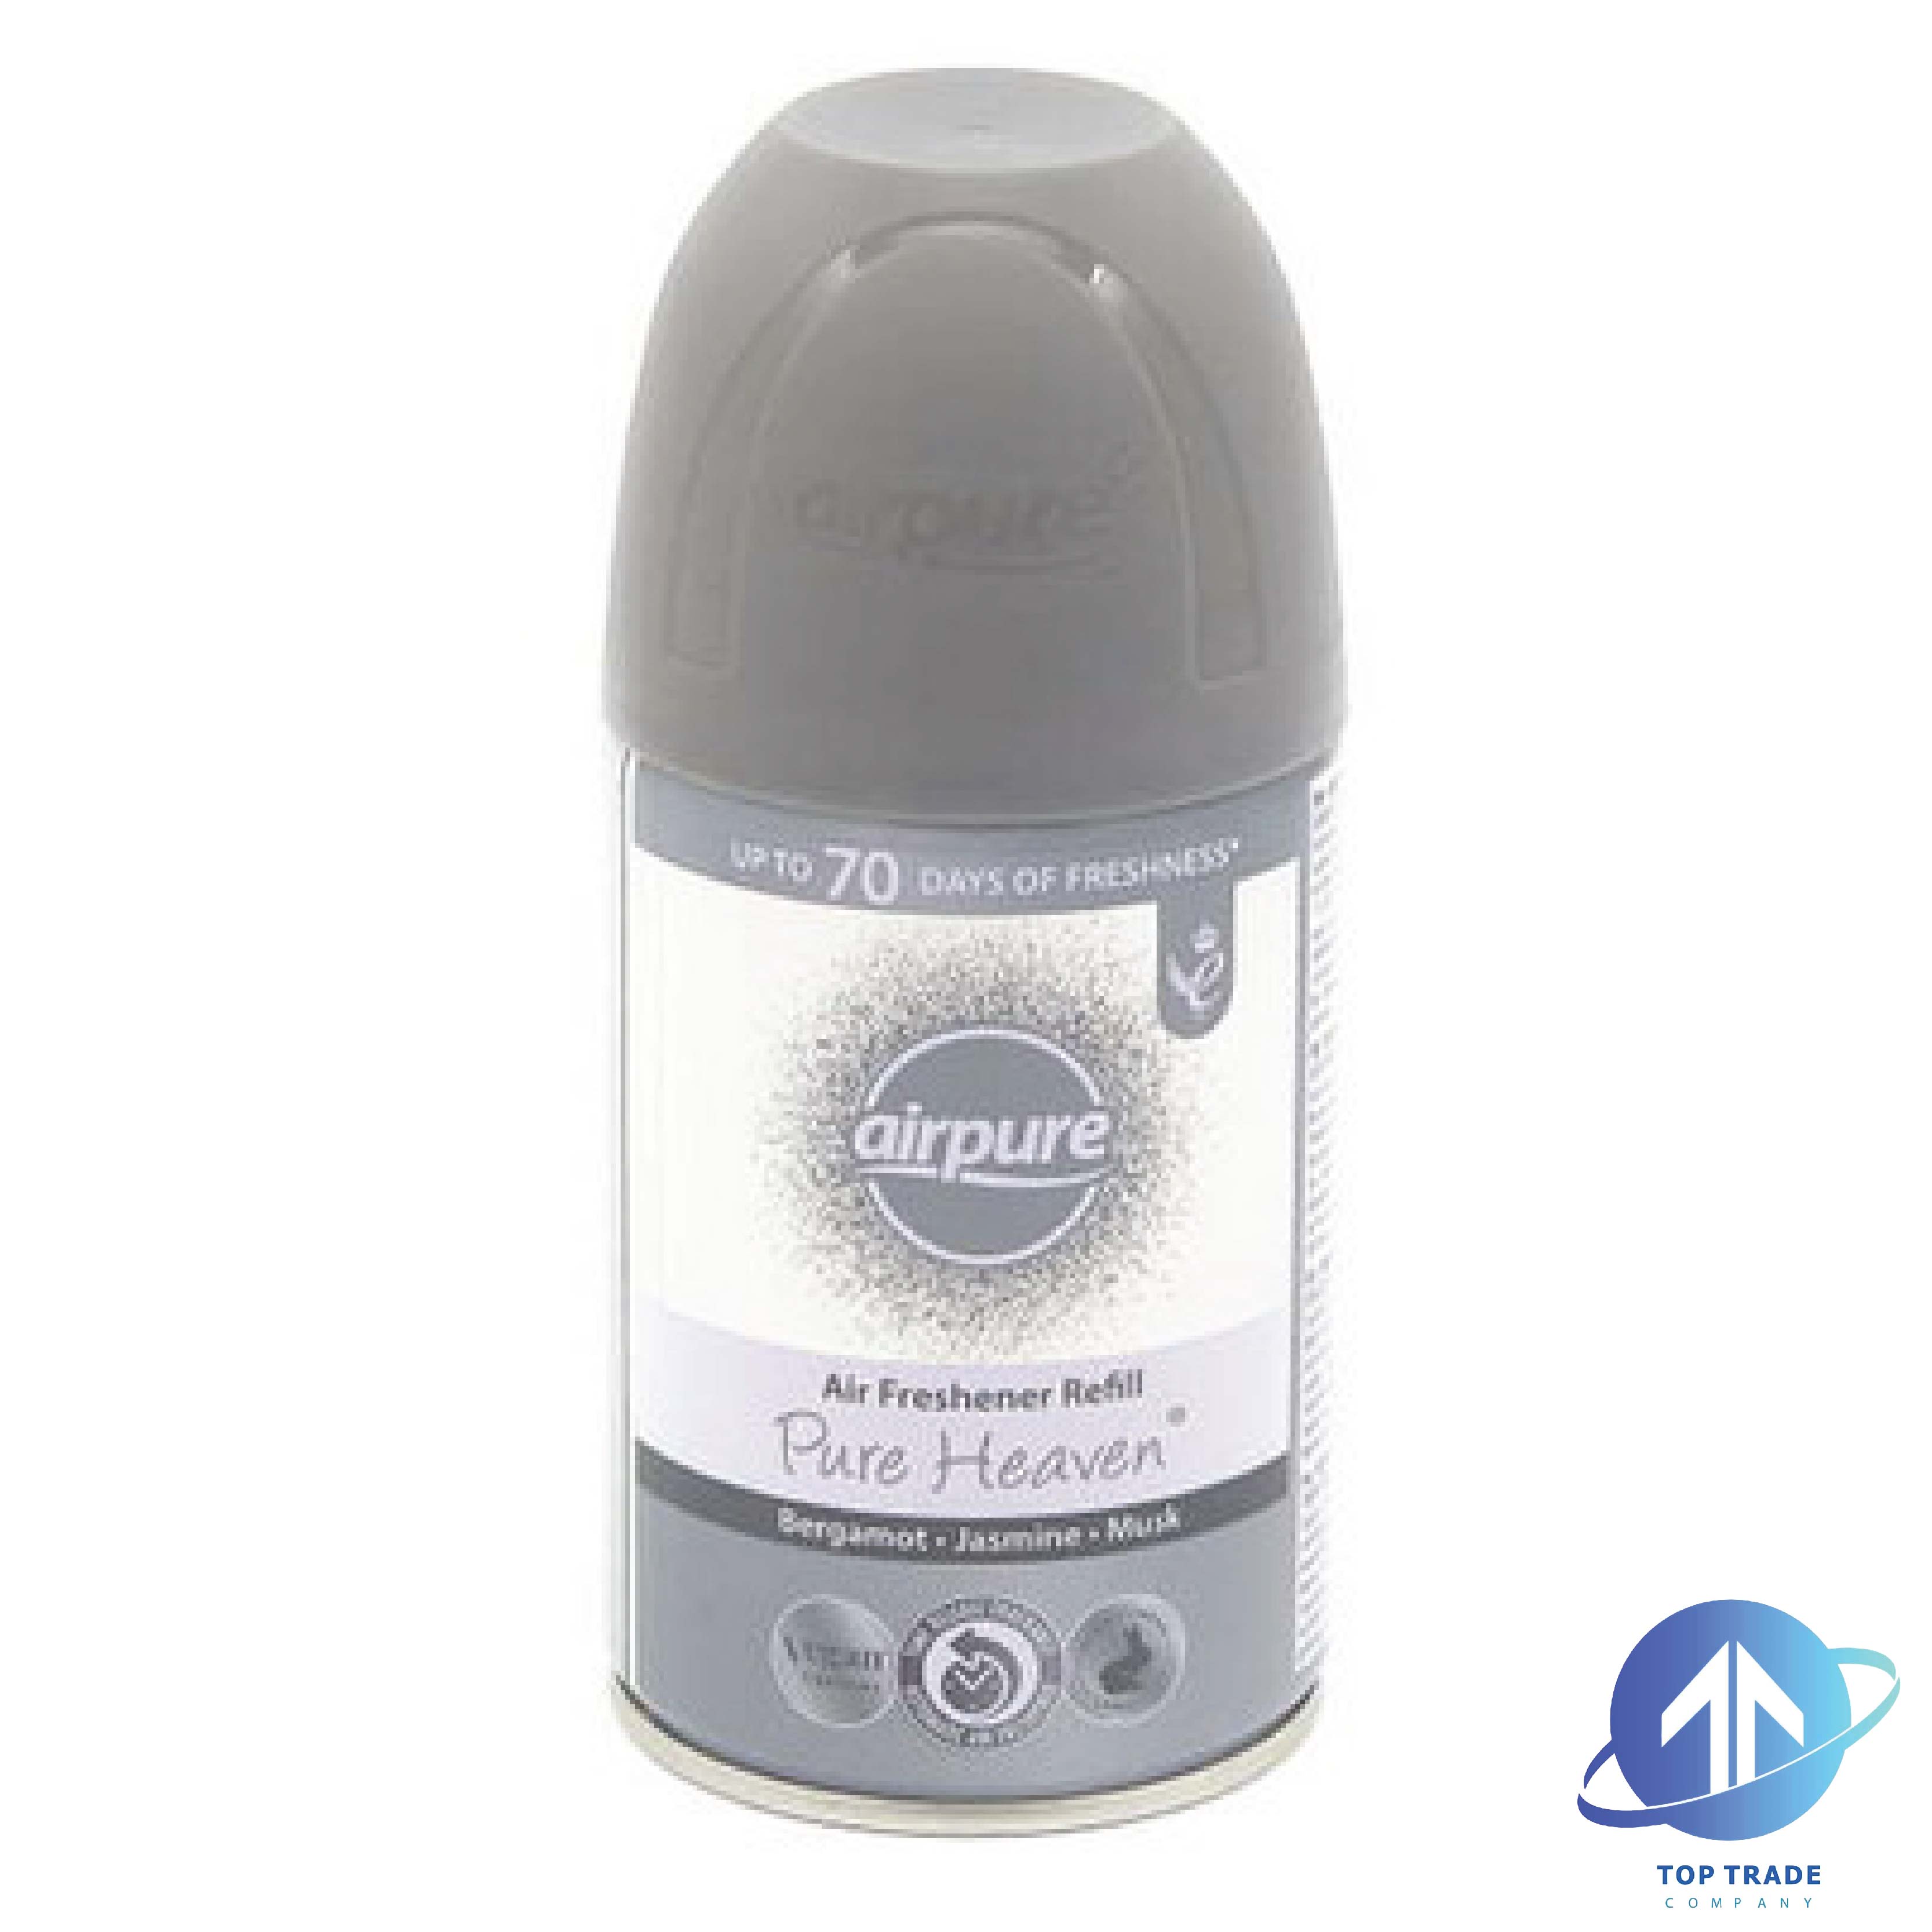 Airpure Air-O-Matic refill Pure Heaven 250ml